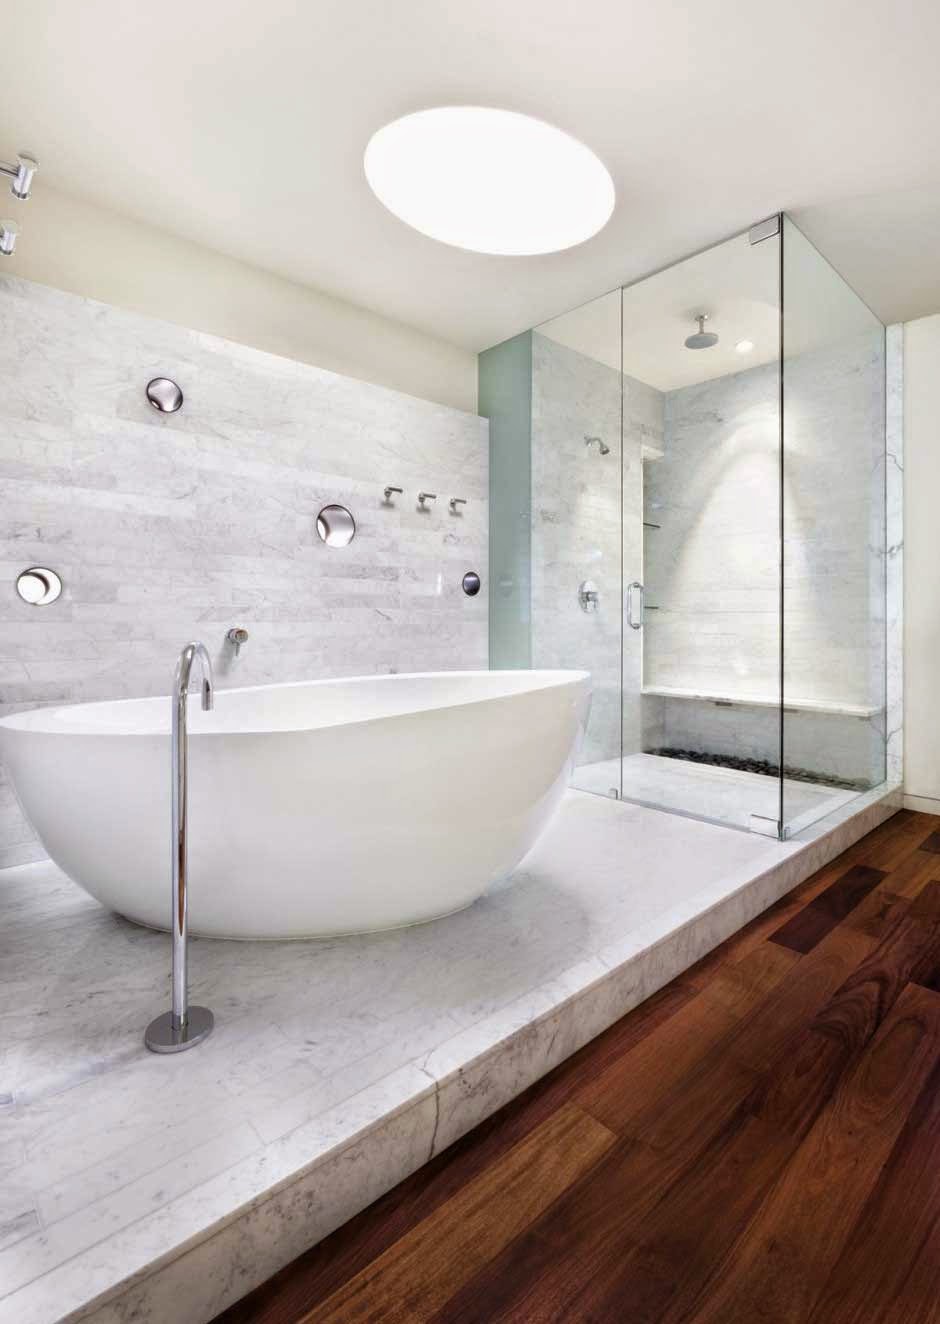 Bathroom Tile Design Program Free | Home Decorating ...